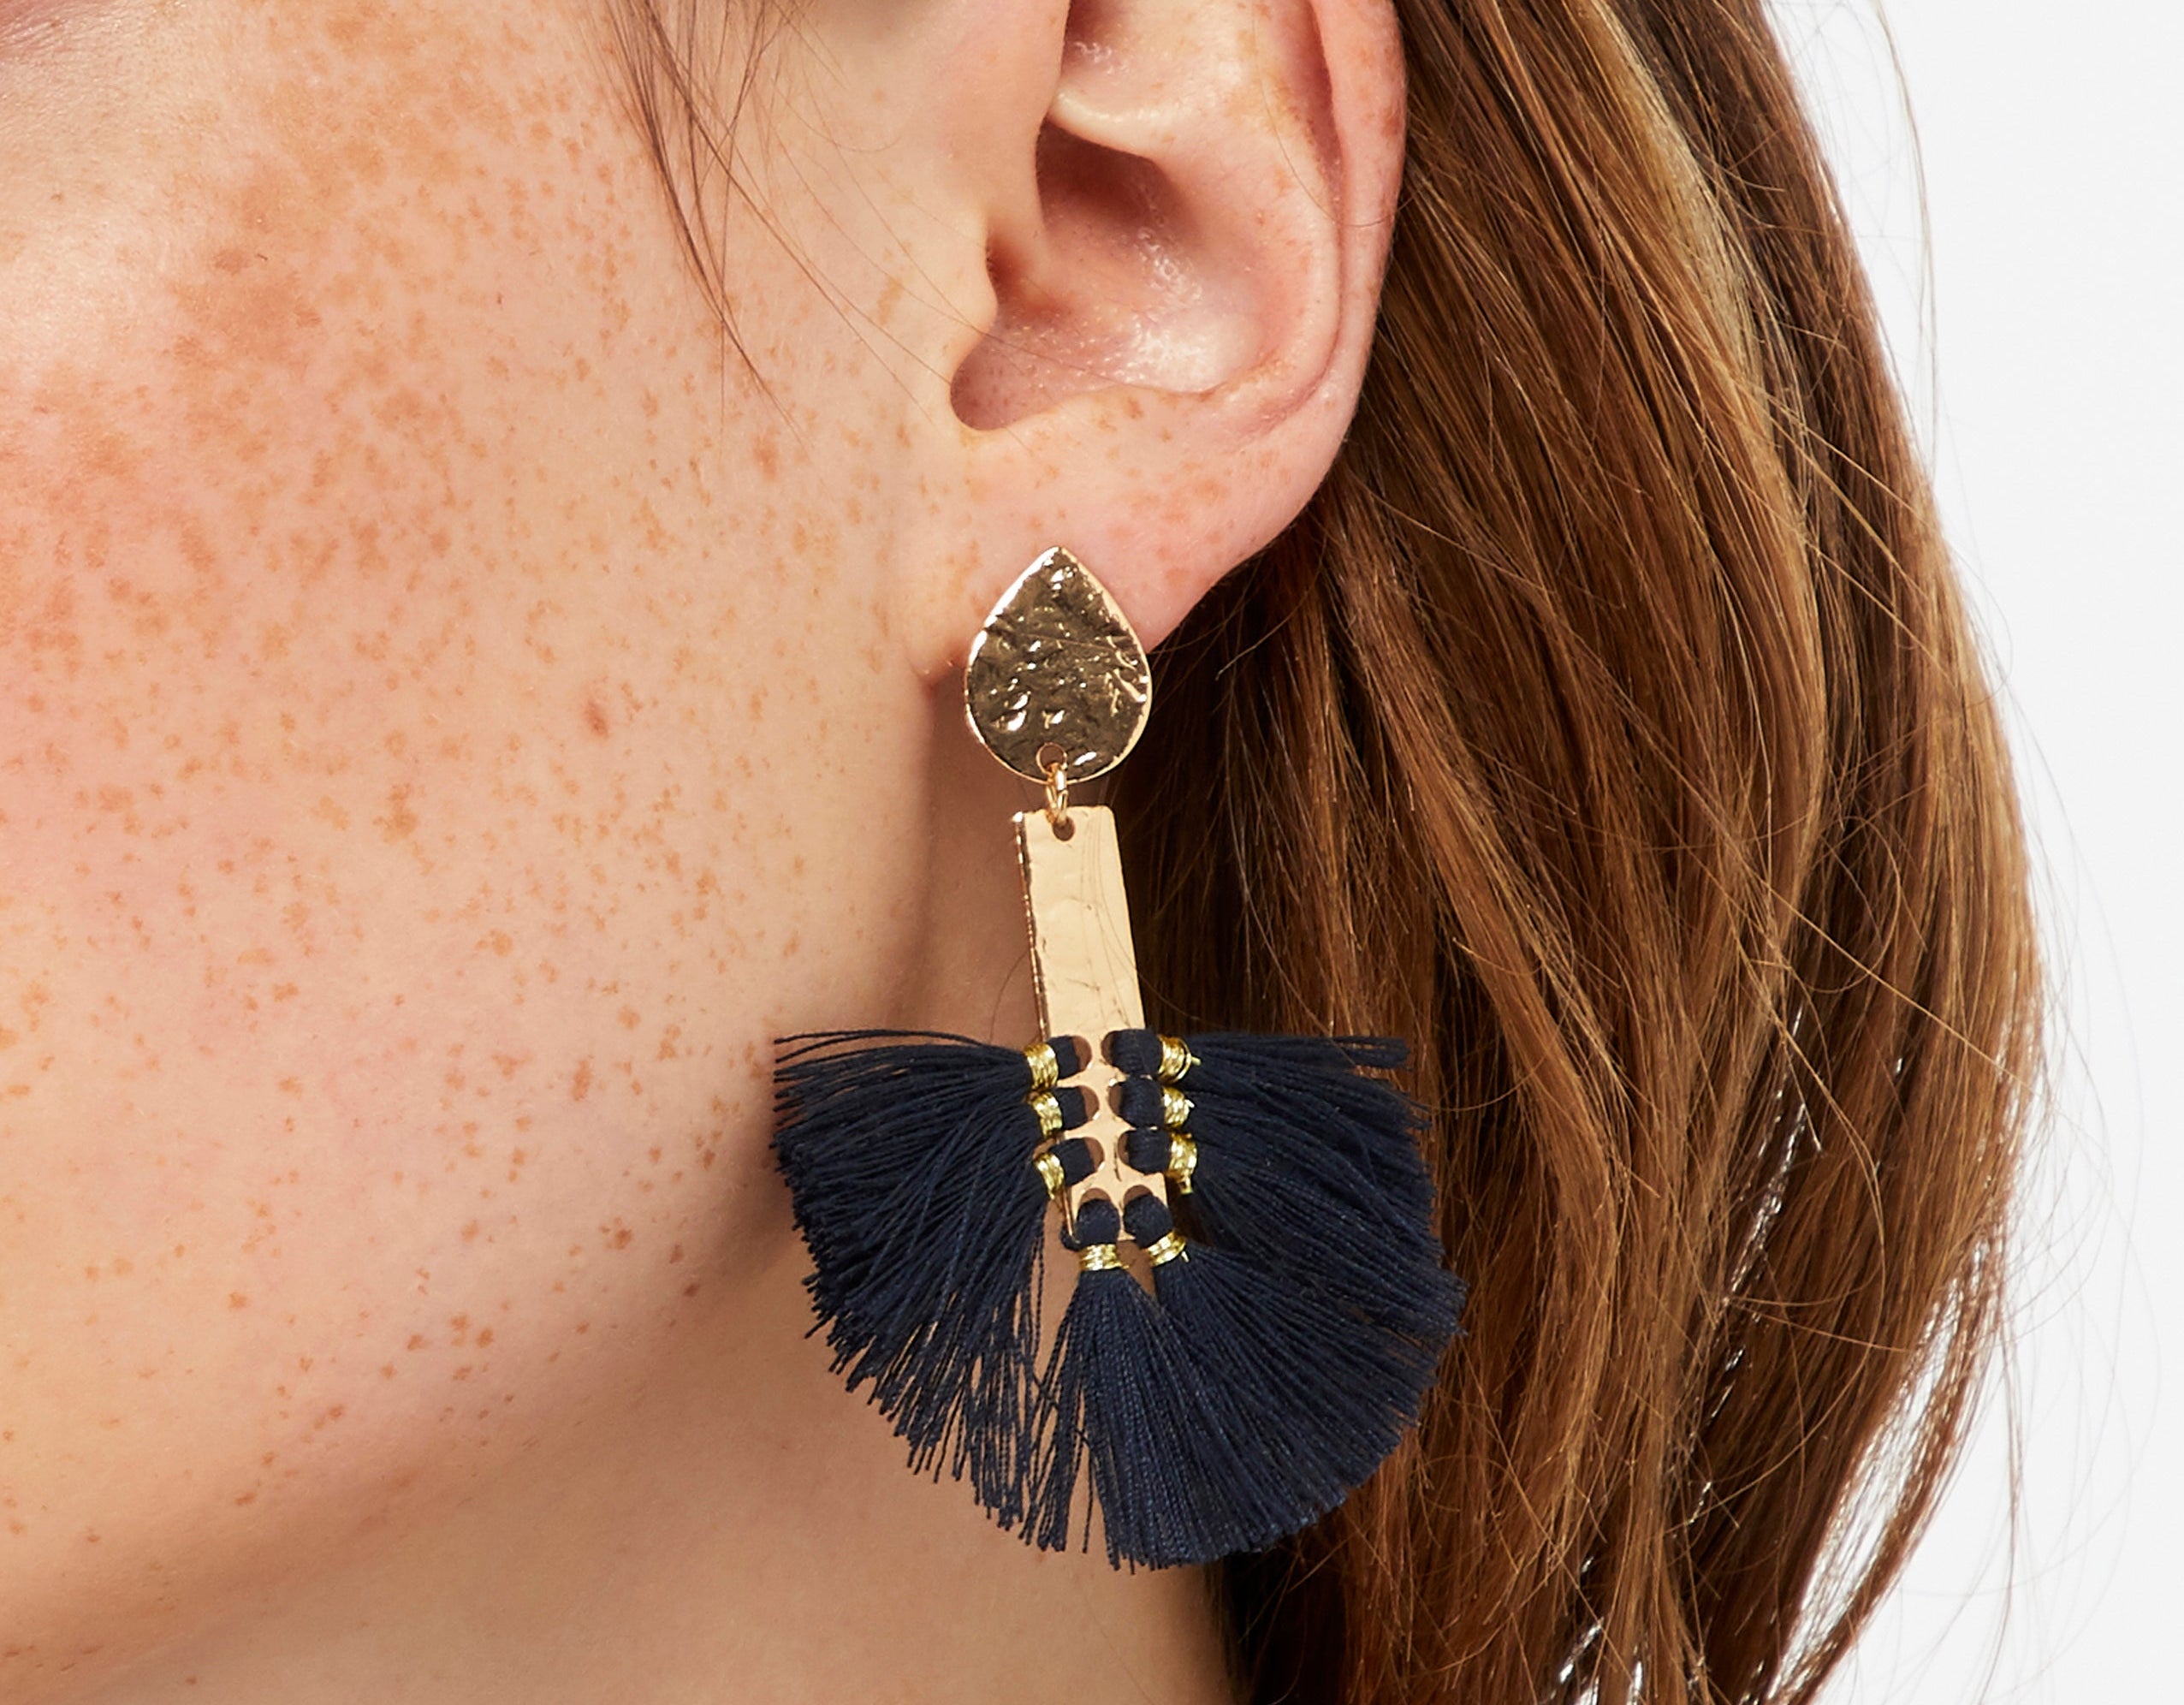 Accessorize London Women's Tribal Warrior Statement Earrings